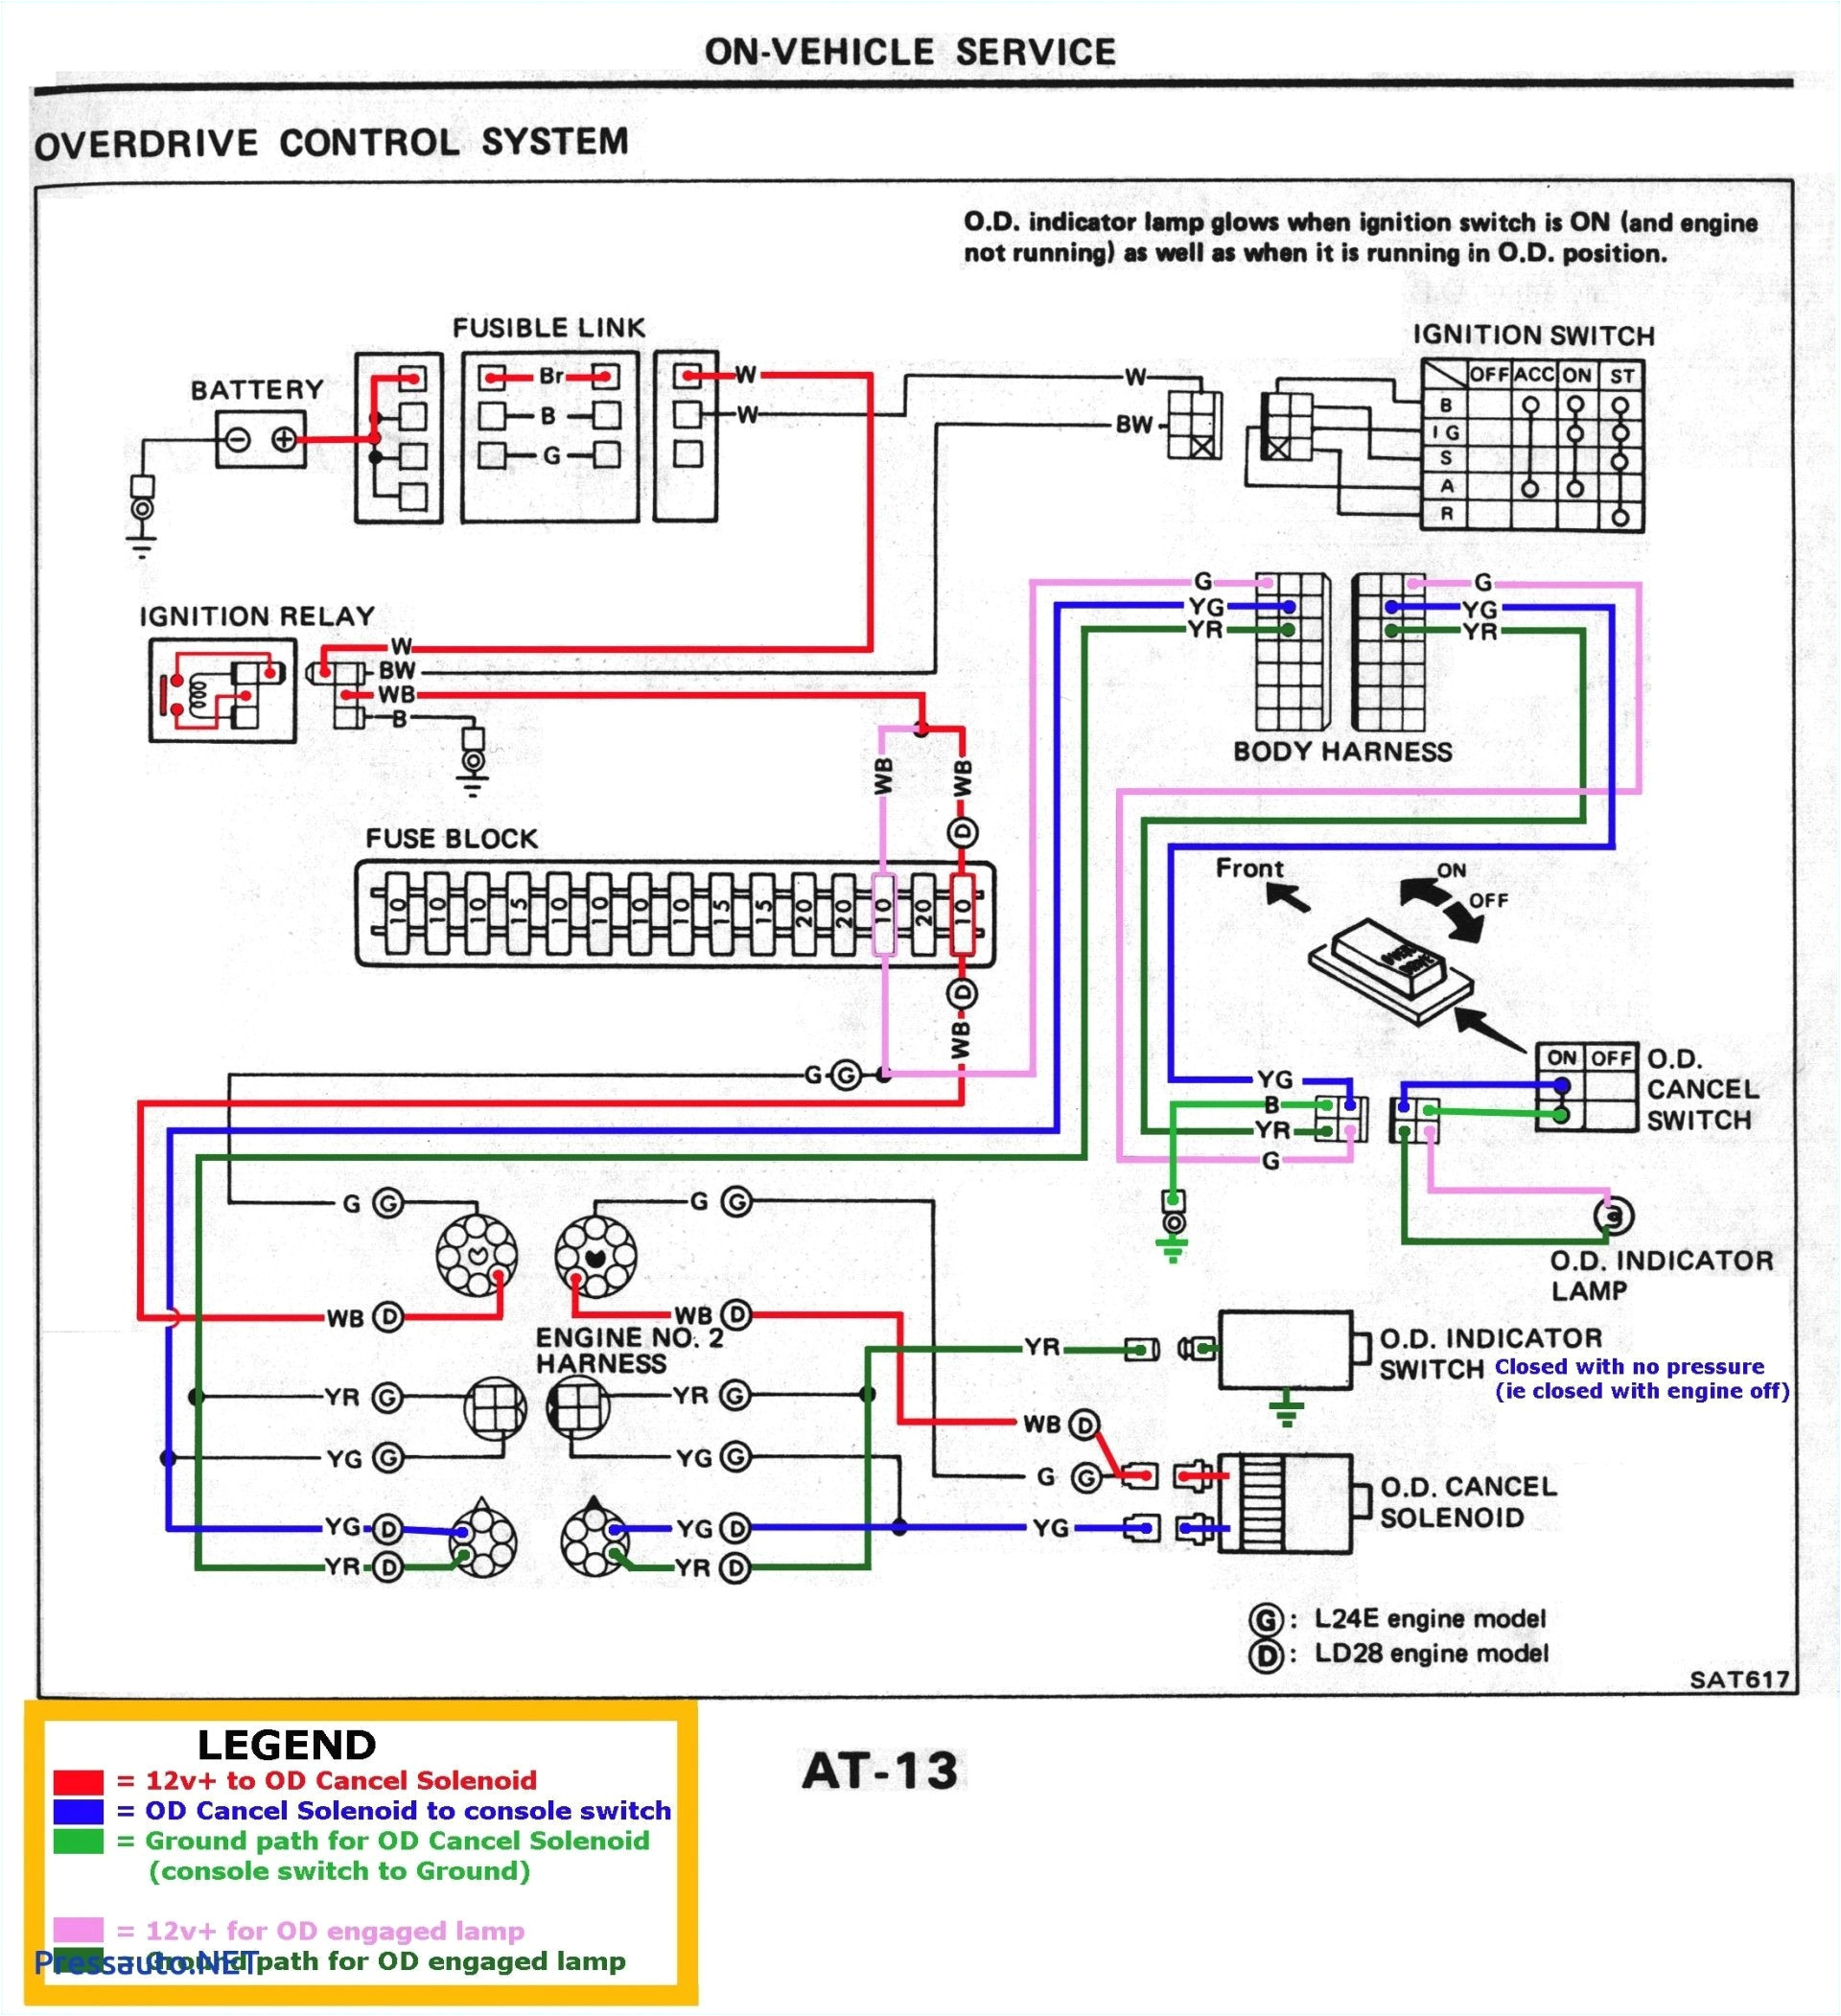 Parrot Ck3200 Wiring Diagram Parrot Ck3200 Wiring Diagram Best Of Parrot 3200 Ls Wiring Diagram